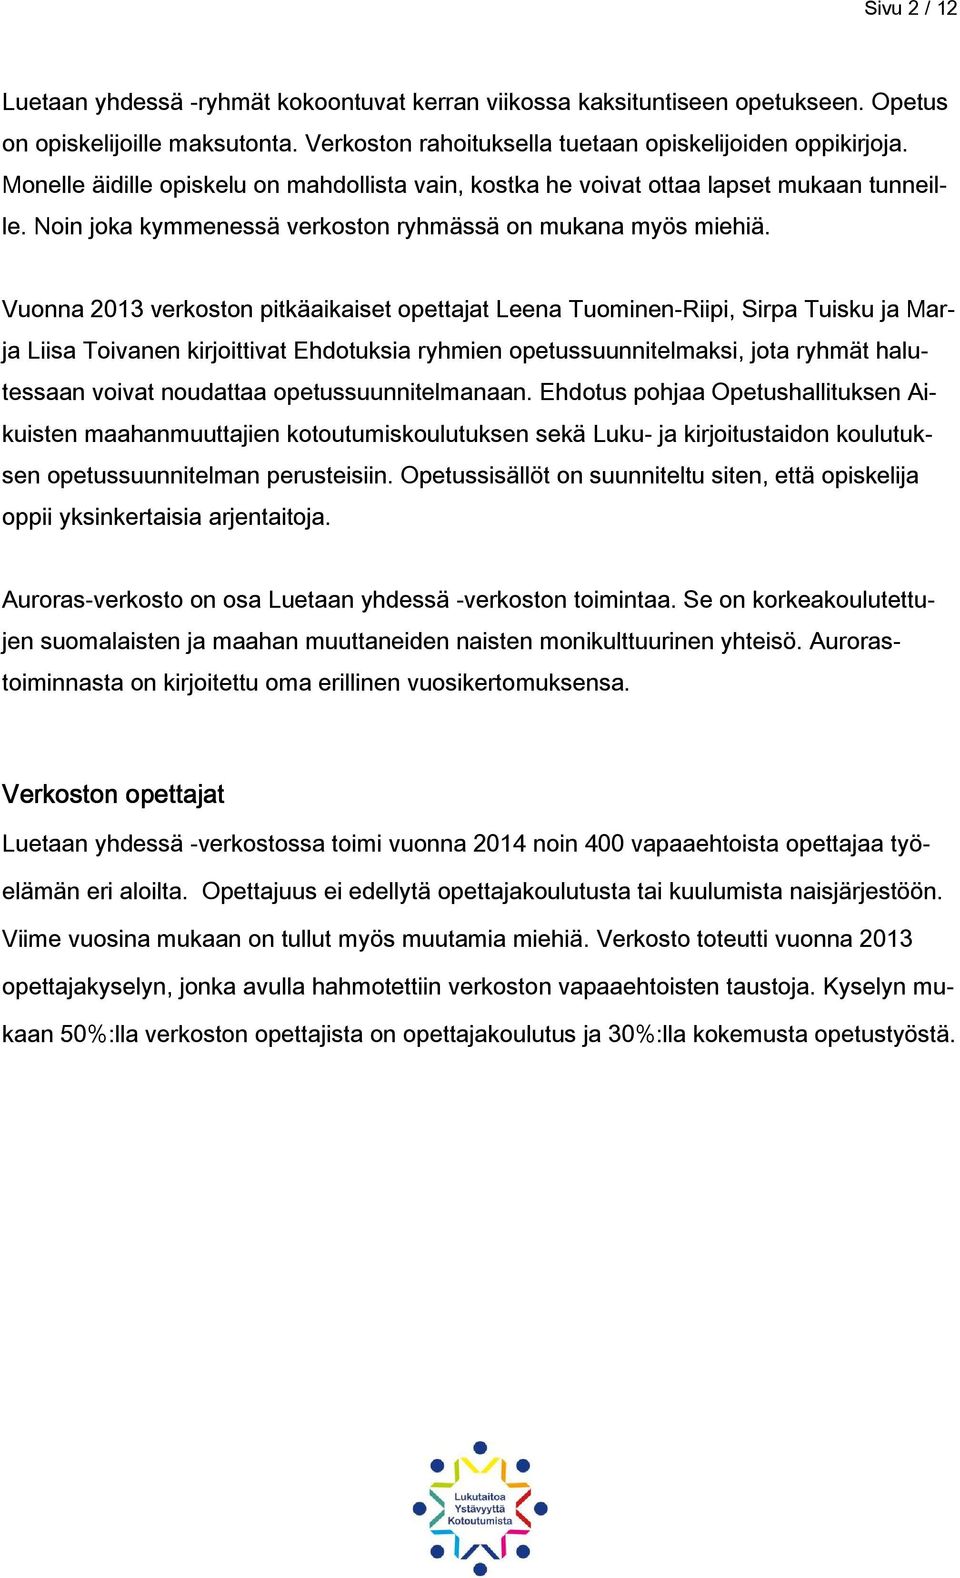 Vuonna 2013 verkoston pitkäaikaiset opettajat Leena Tuominen-Riipi, Sirpa Tuisku ja Marja Liisa Toivanen kirjoittivat Ehdotuksia ryhmien opetussuunnitelmaksi, jota ryhmät halutessaan voivat noudattaa